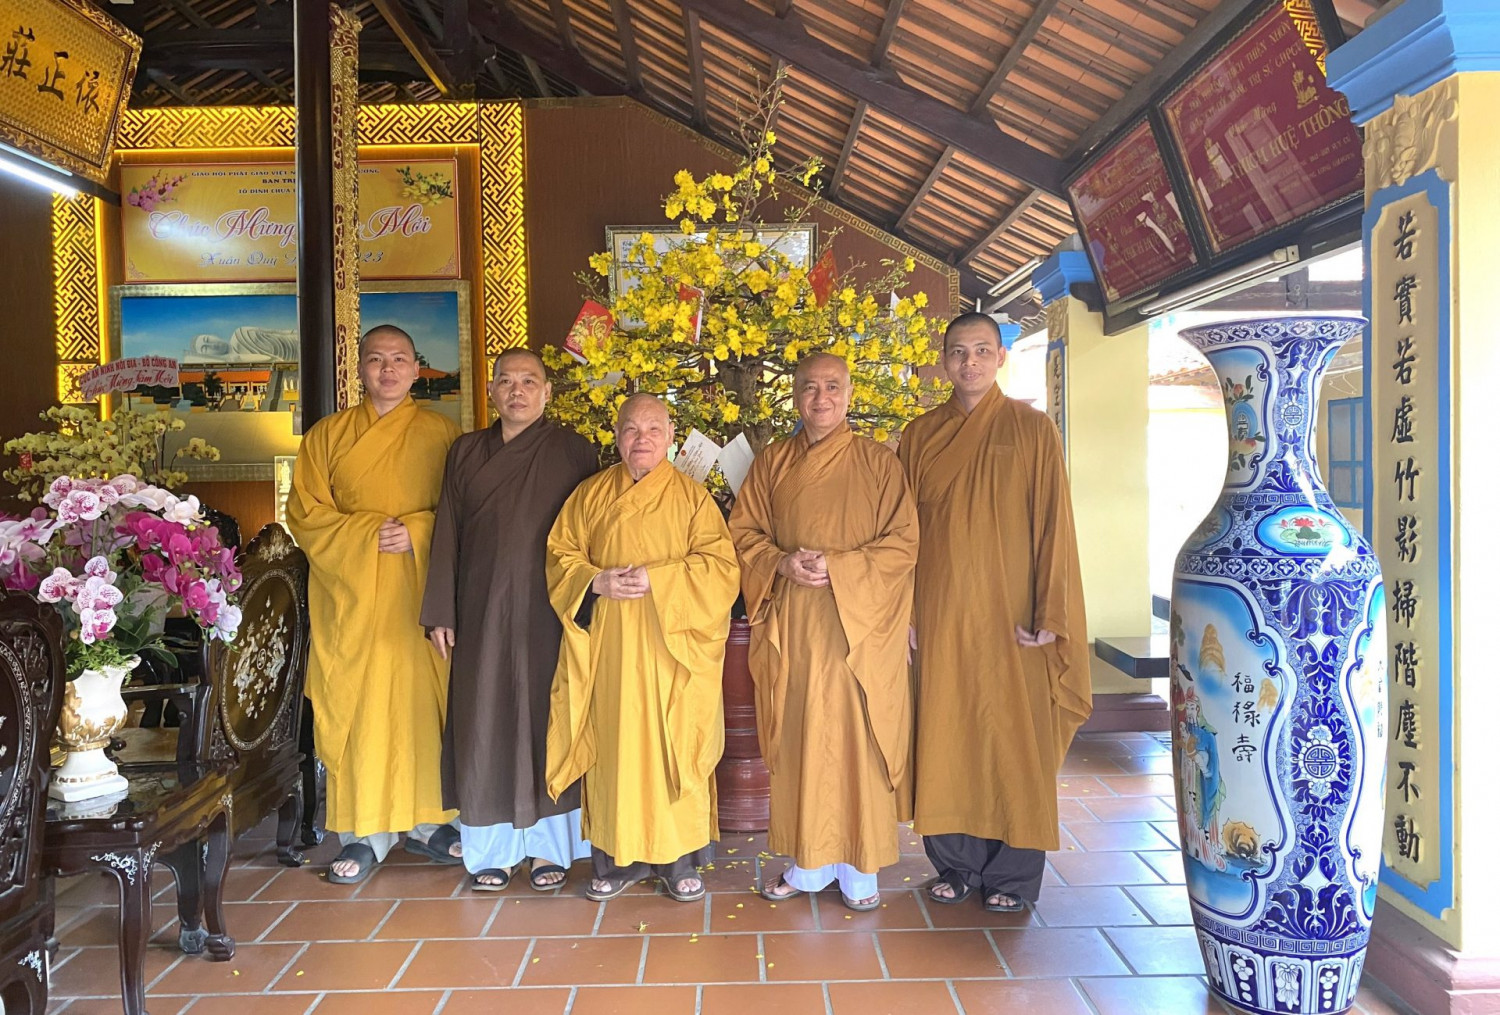 Bình Dương: Đức Trưởng lão Hòa thượng Chủ tịch thăm Tổ đình Hội Khánh nhân ngày đầu năm